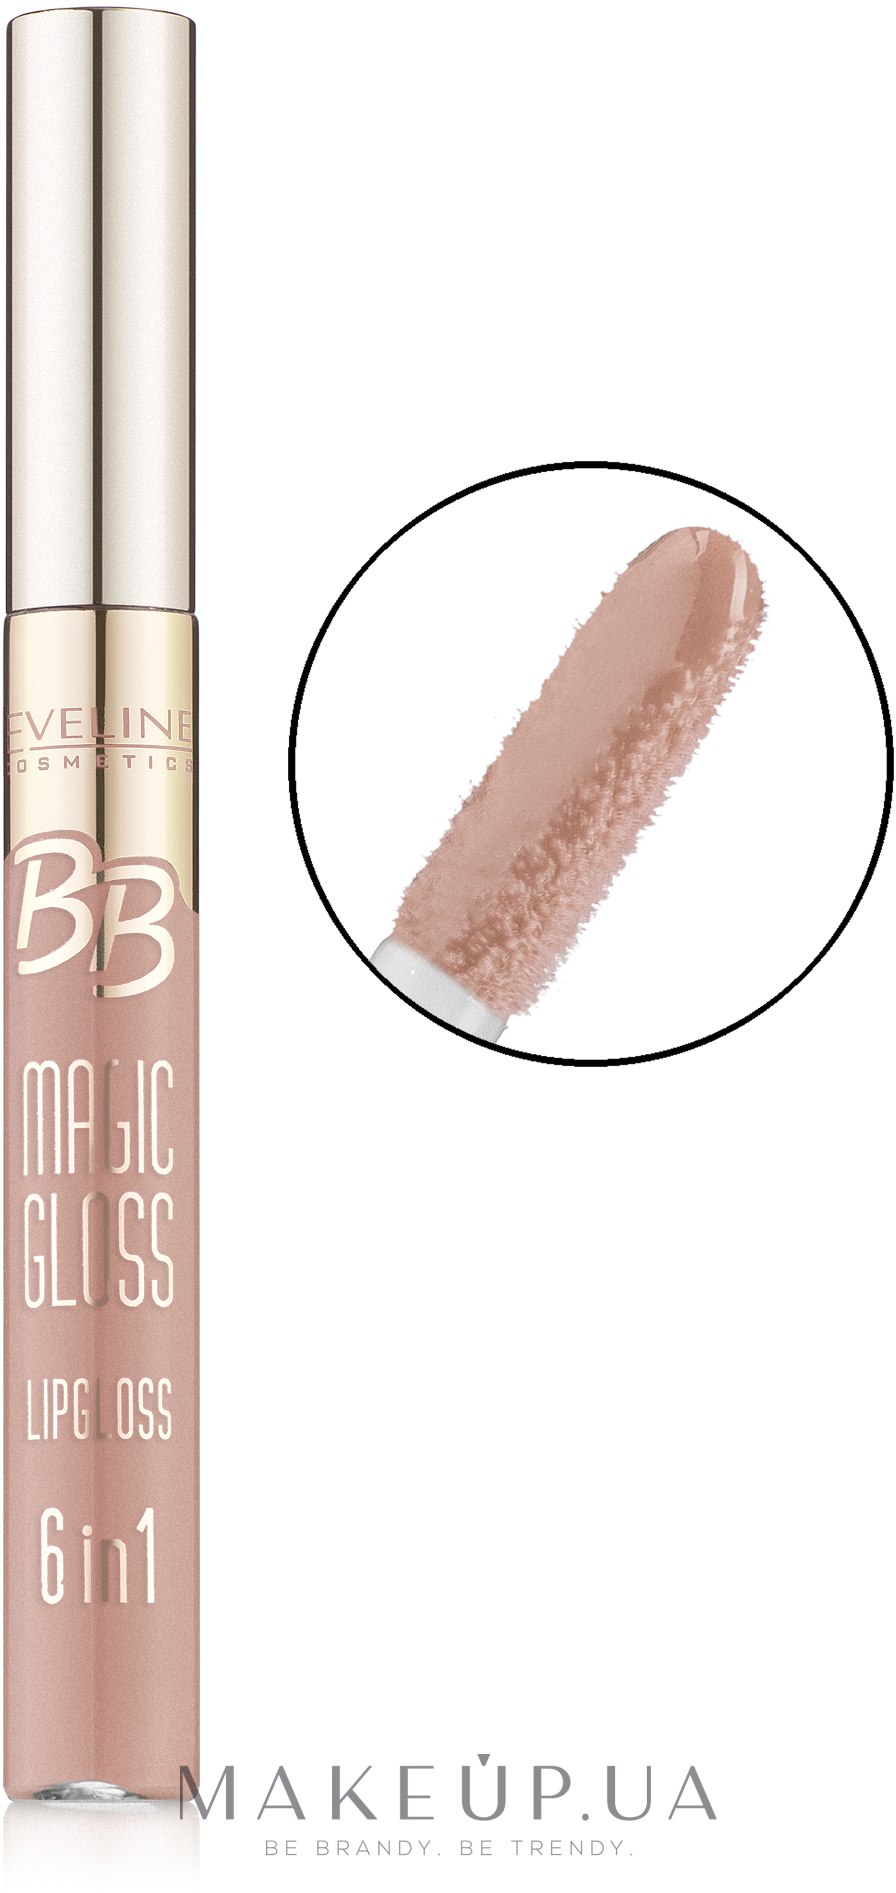 Блеск для губ - Eveline Cosmetics BB Magic Gloss Lipgloss 6 w 1 — фото 358